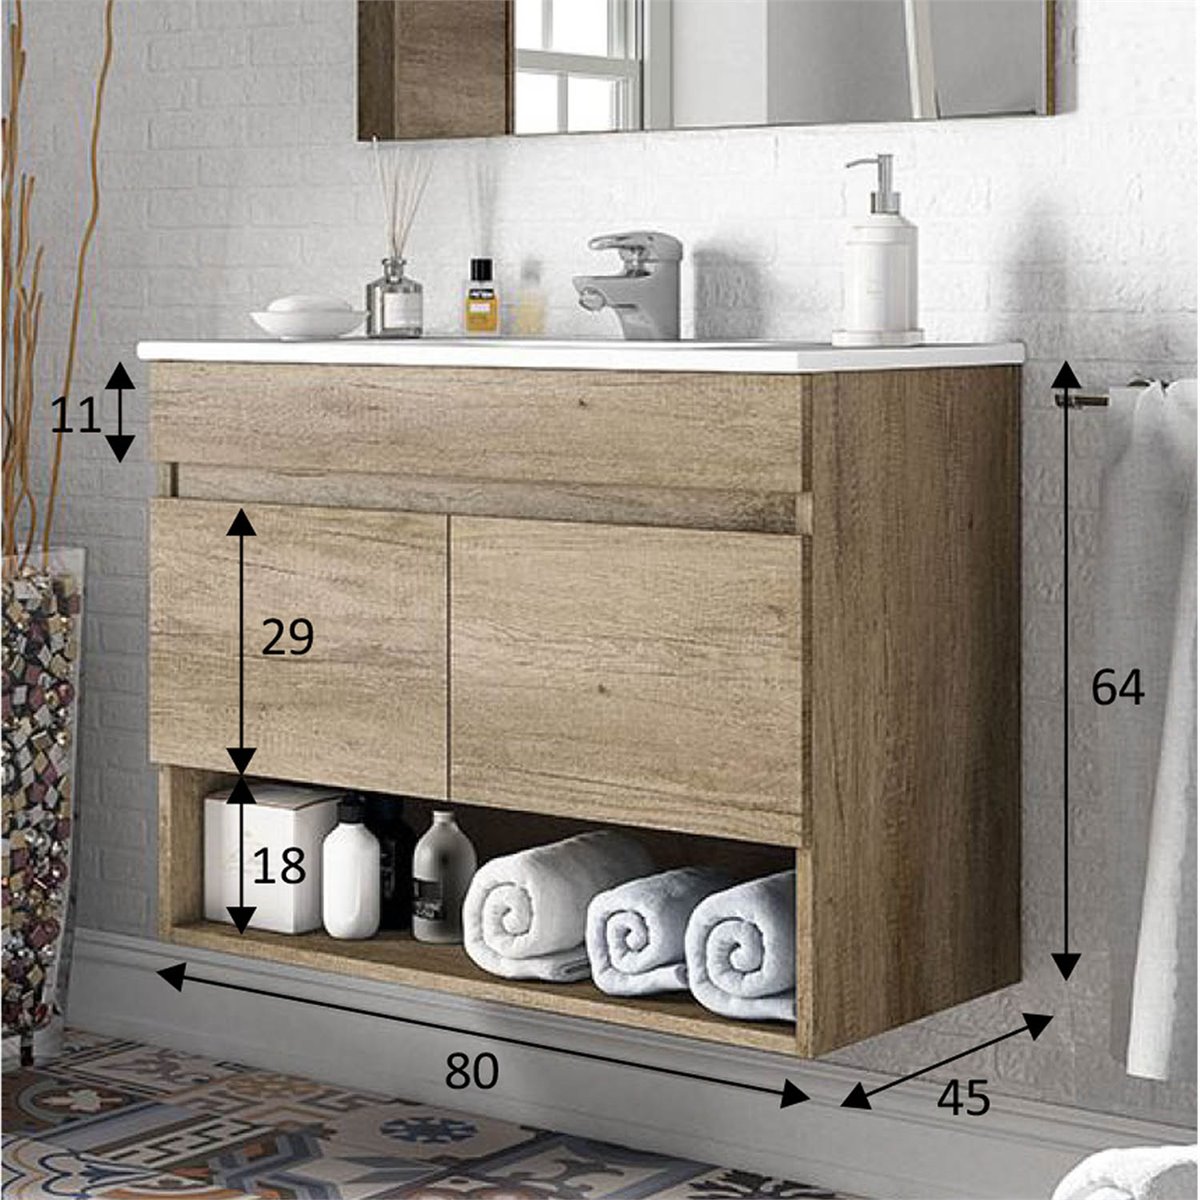 AIR Mueble de baño de 80 cm de ancho con 2 cajones y espejo. Lavabo no  incluido.